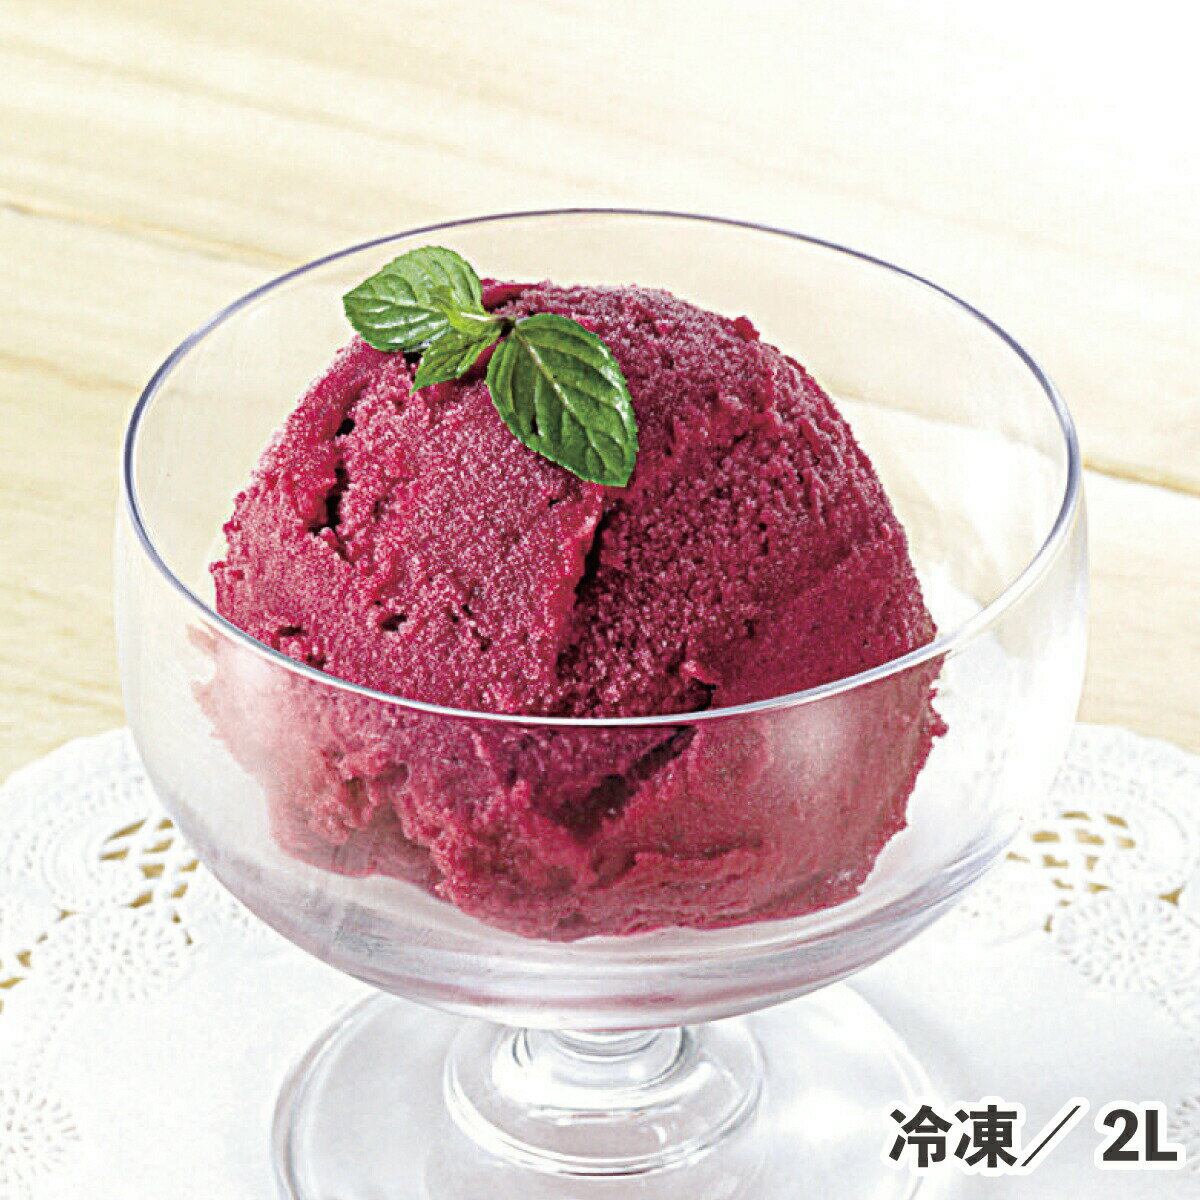 エクセレントカシスシャーベット 2L 冷凍 スイーツ アイス カシス 業務用 デザート 氷菓 パフェ 皿盛り